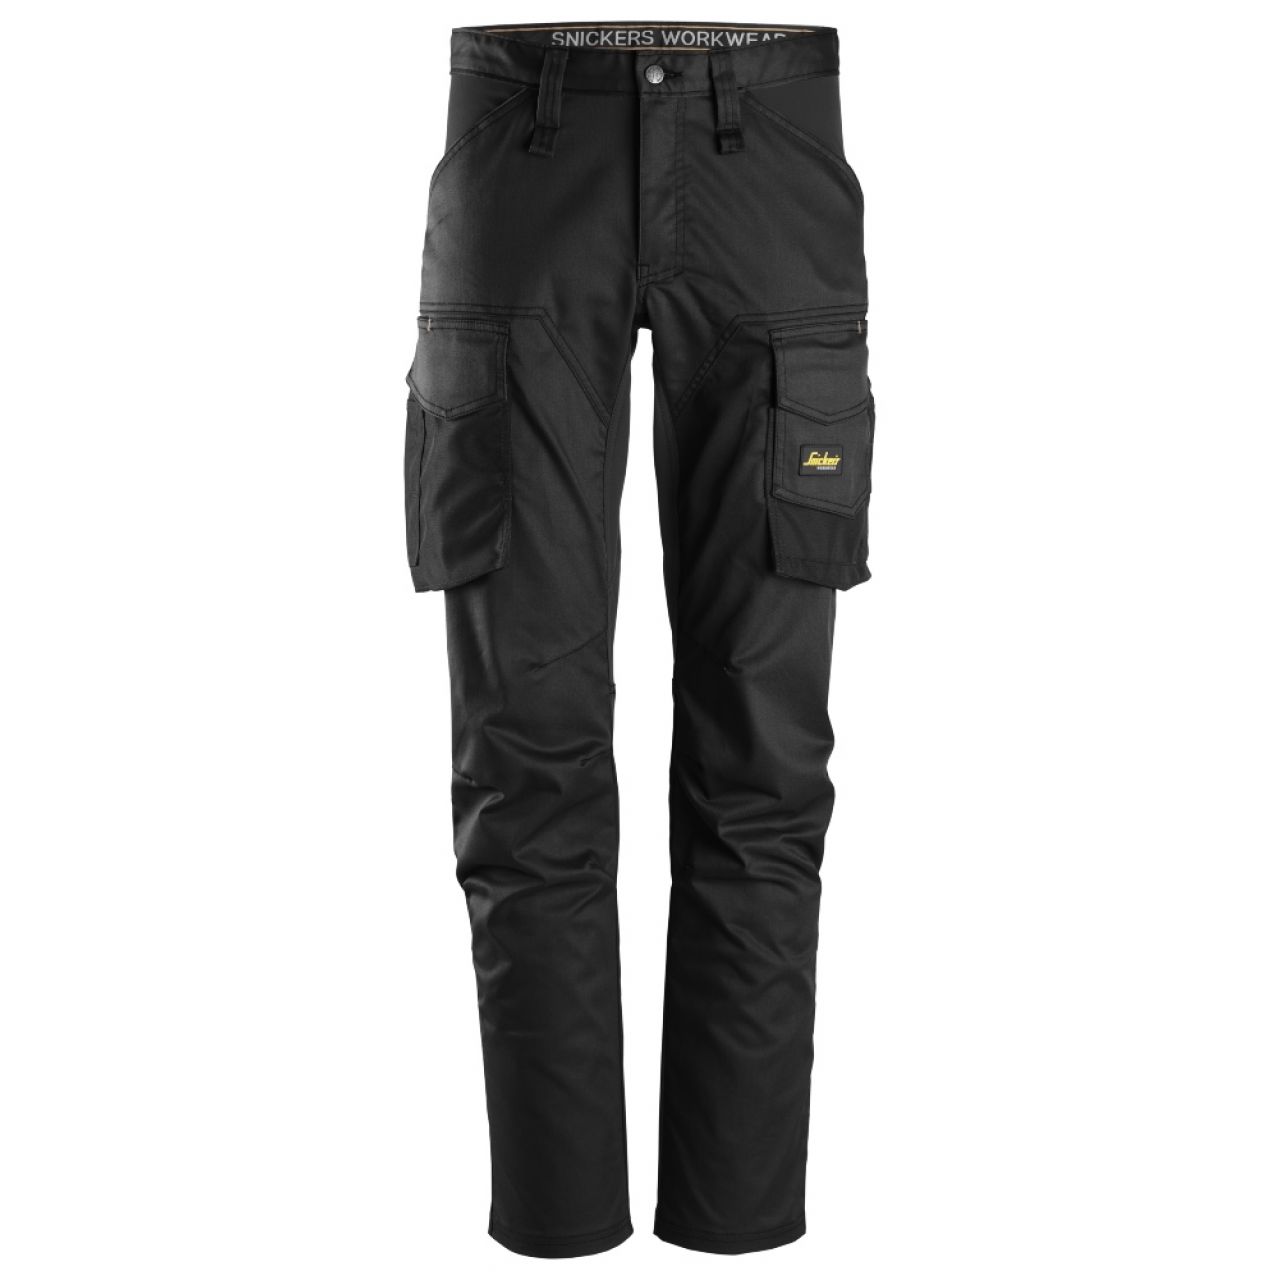 6803 Pantalones largos de trabajo elásticos sin bolsillos para las rodilleras AllroundWork negro talla 50